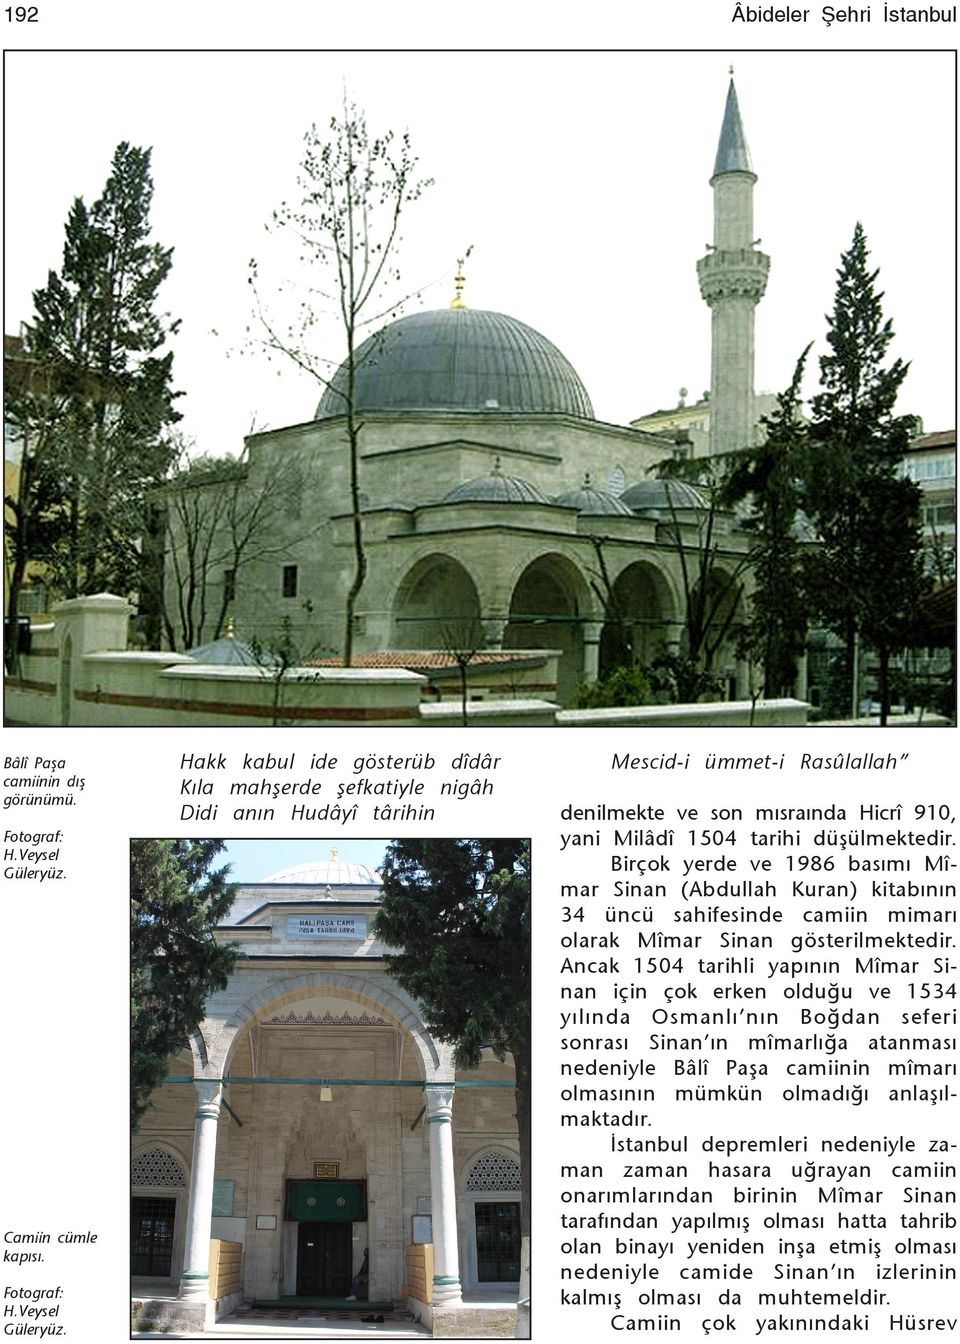 Birçok yerde ve 1986 basýmý Mîmar Sinan (Abdullah Kuran) kitabýnýn 34 üncü sahifesinde camiin mimarý olarak Mîmar Sinan gösterilmektedir.